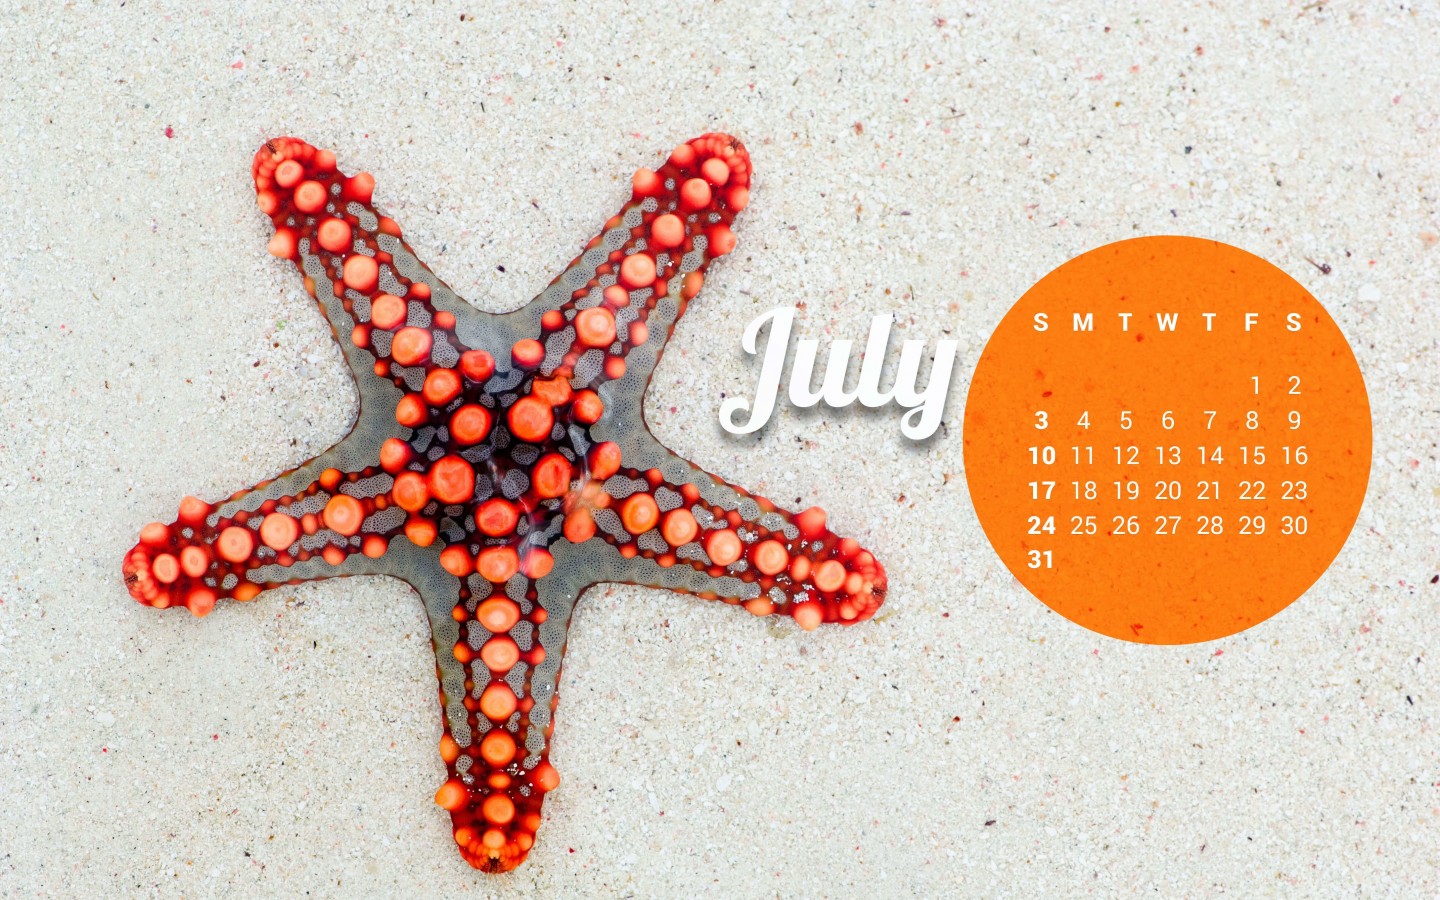 July 2016 Calendar Wallpaper for Desktop 1440x900